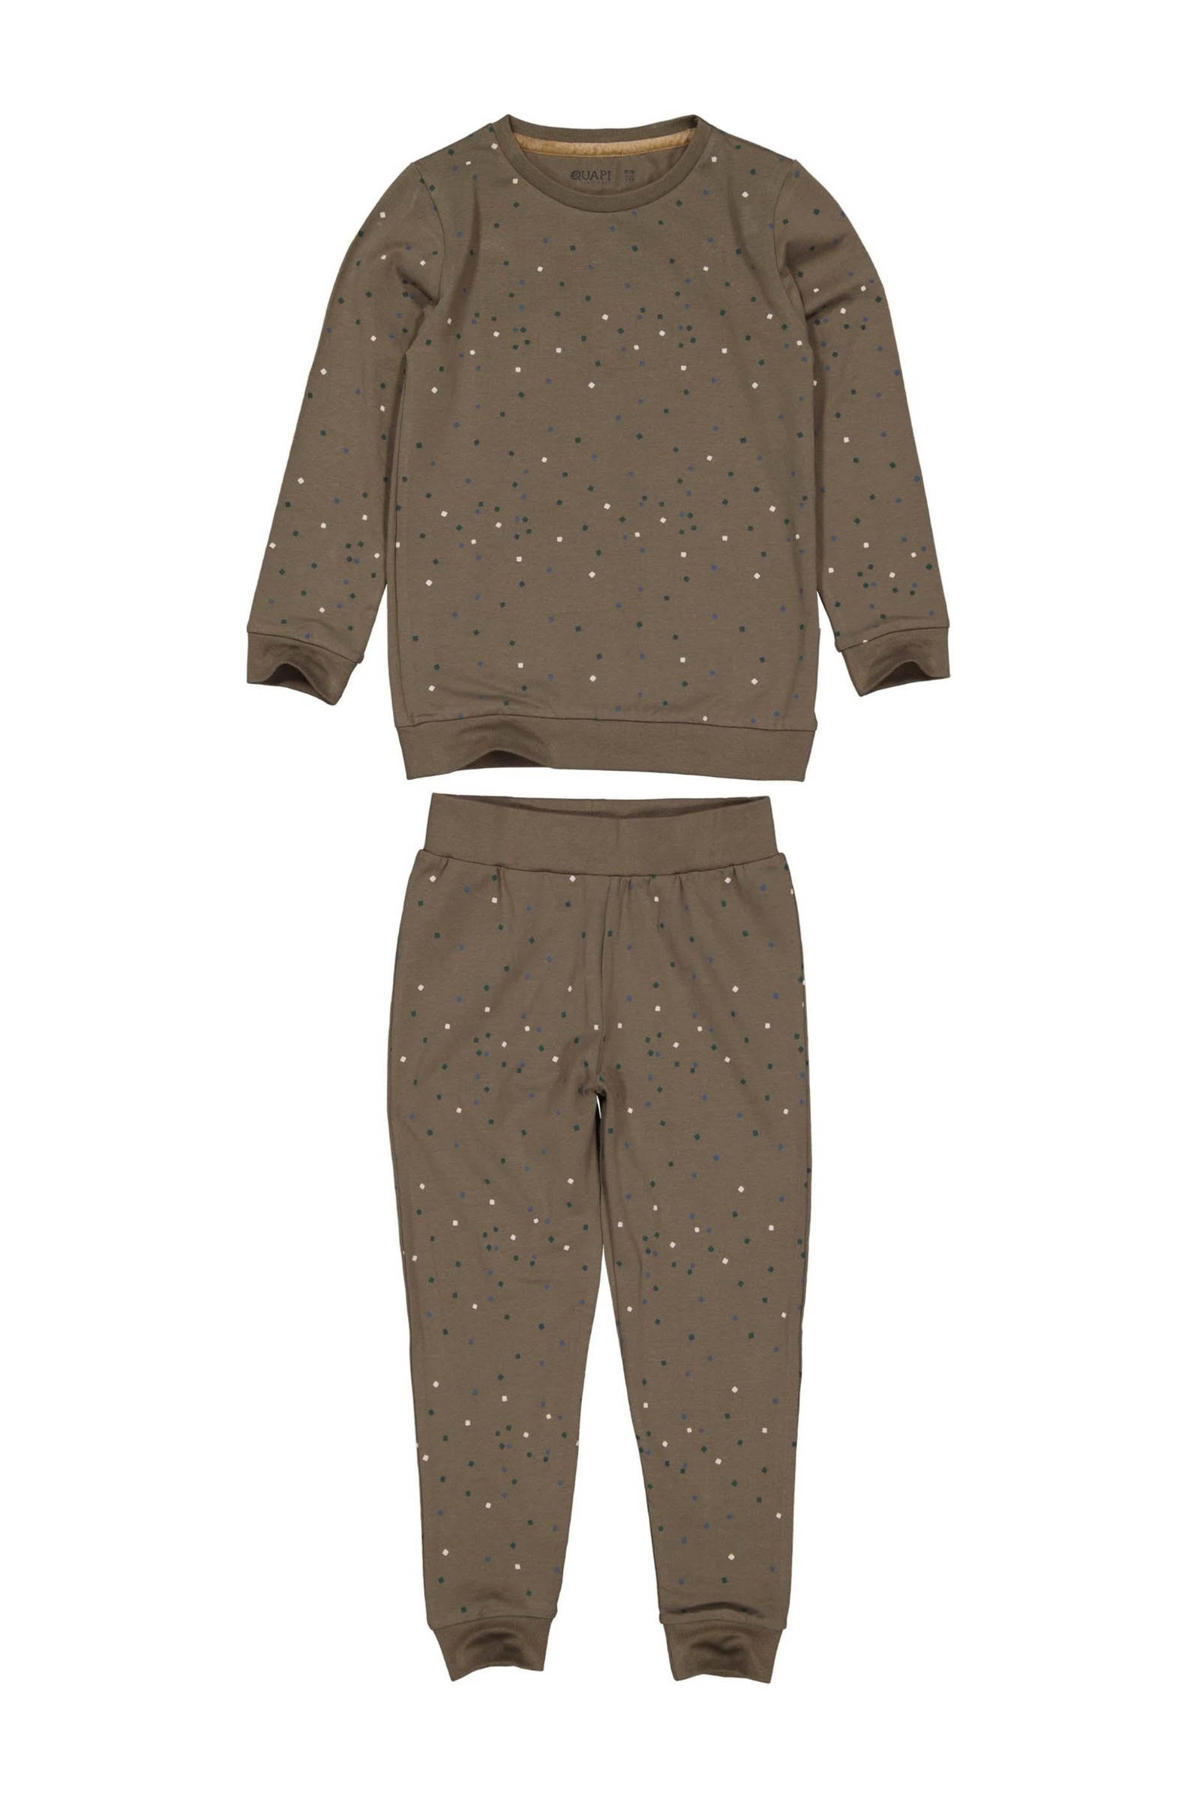 Wreedheid nabootsen onderwijzen Quapi pyjama PUCK met all over print bruin | wehkamp